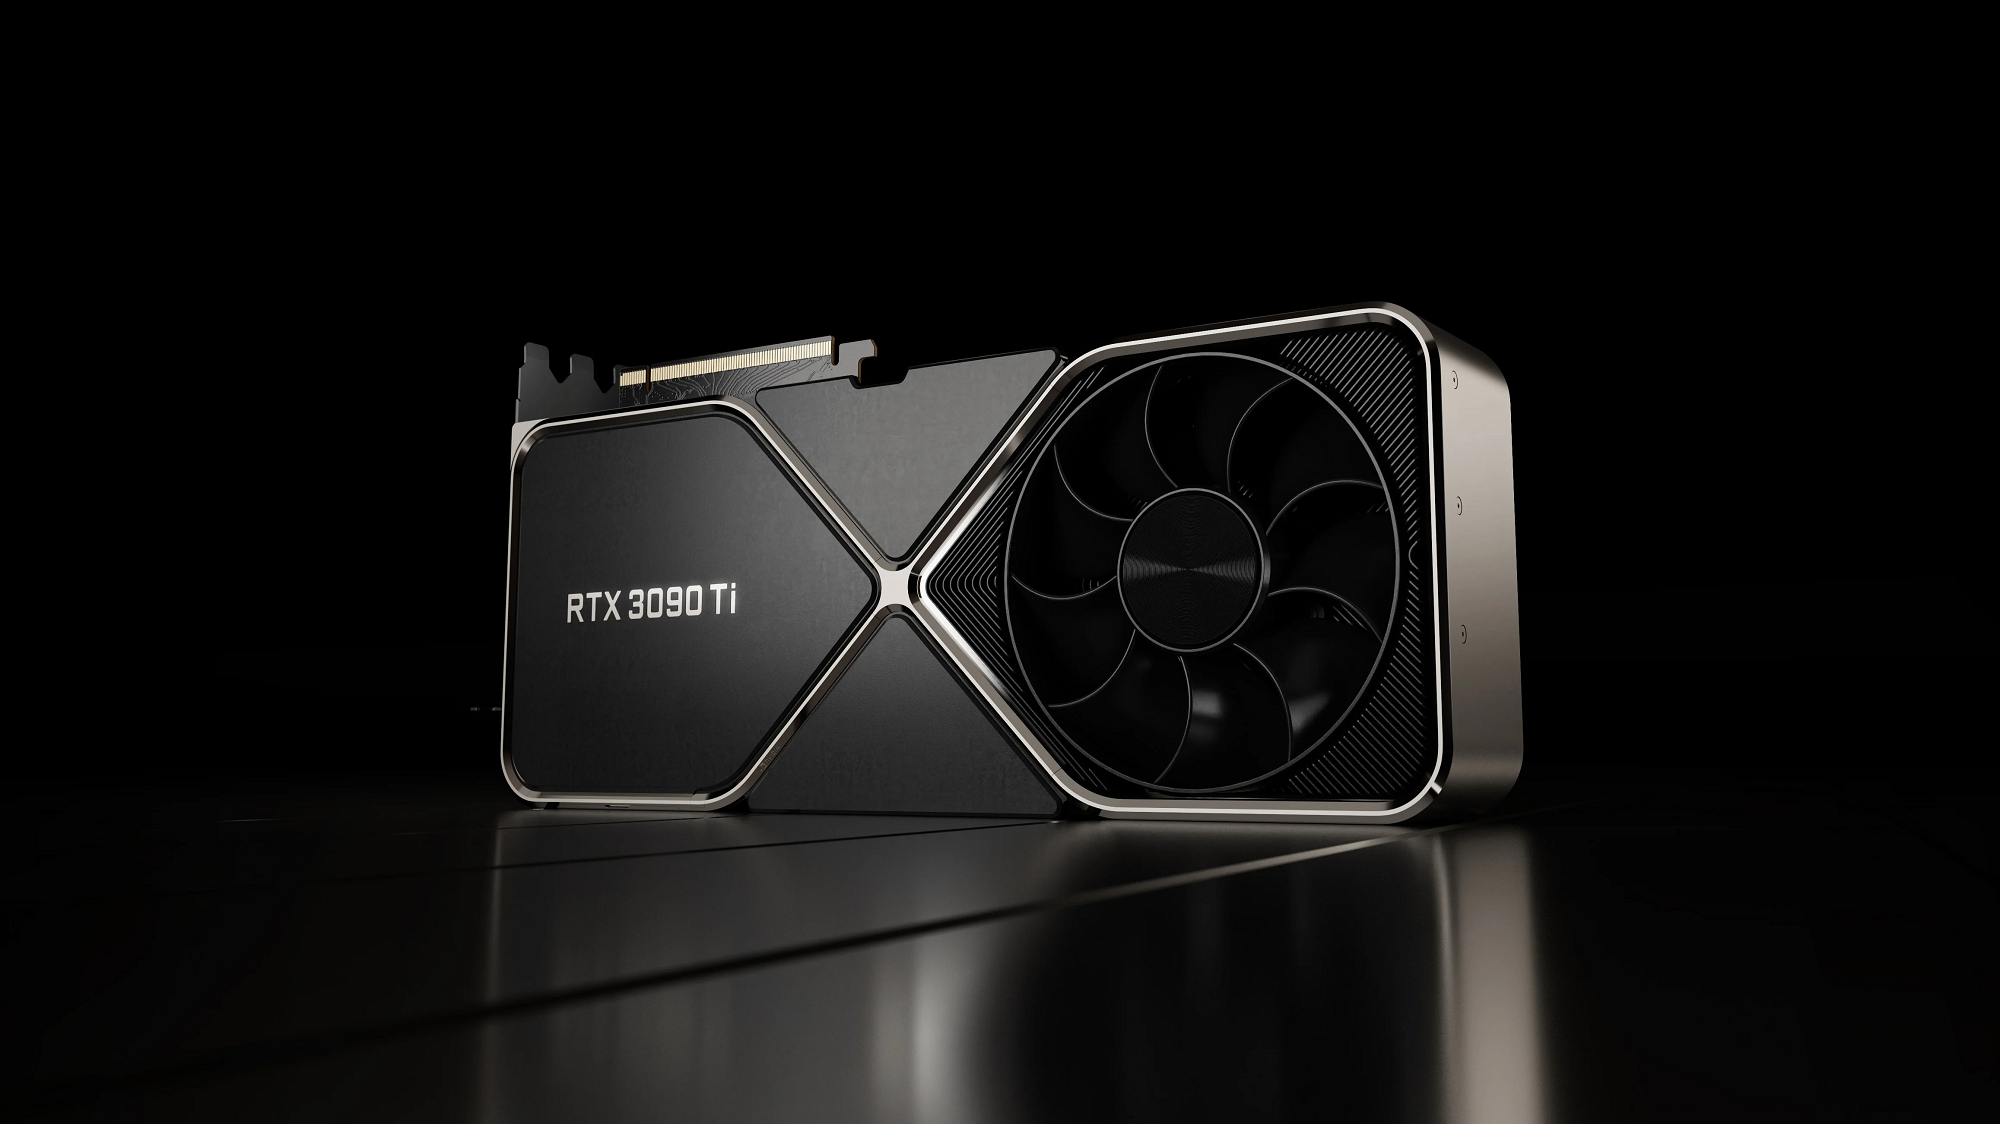 En Estados Unidos, la NVIDIA GeForce RTX 3090 Ti comenzó a venderse repentinamente por 1600 dólares con un precio recomendado de 2000 dólares